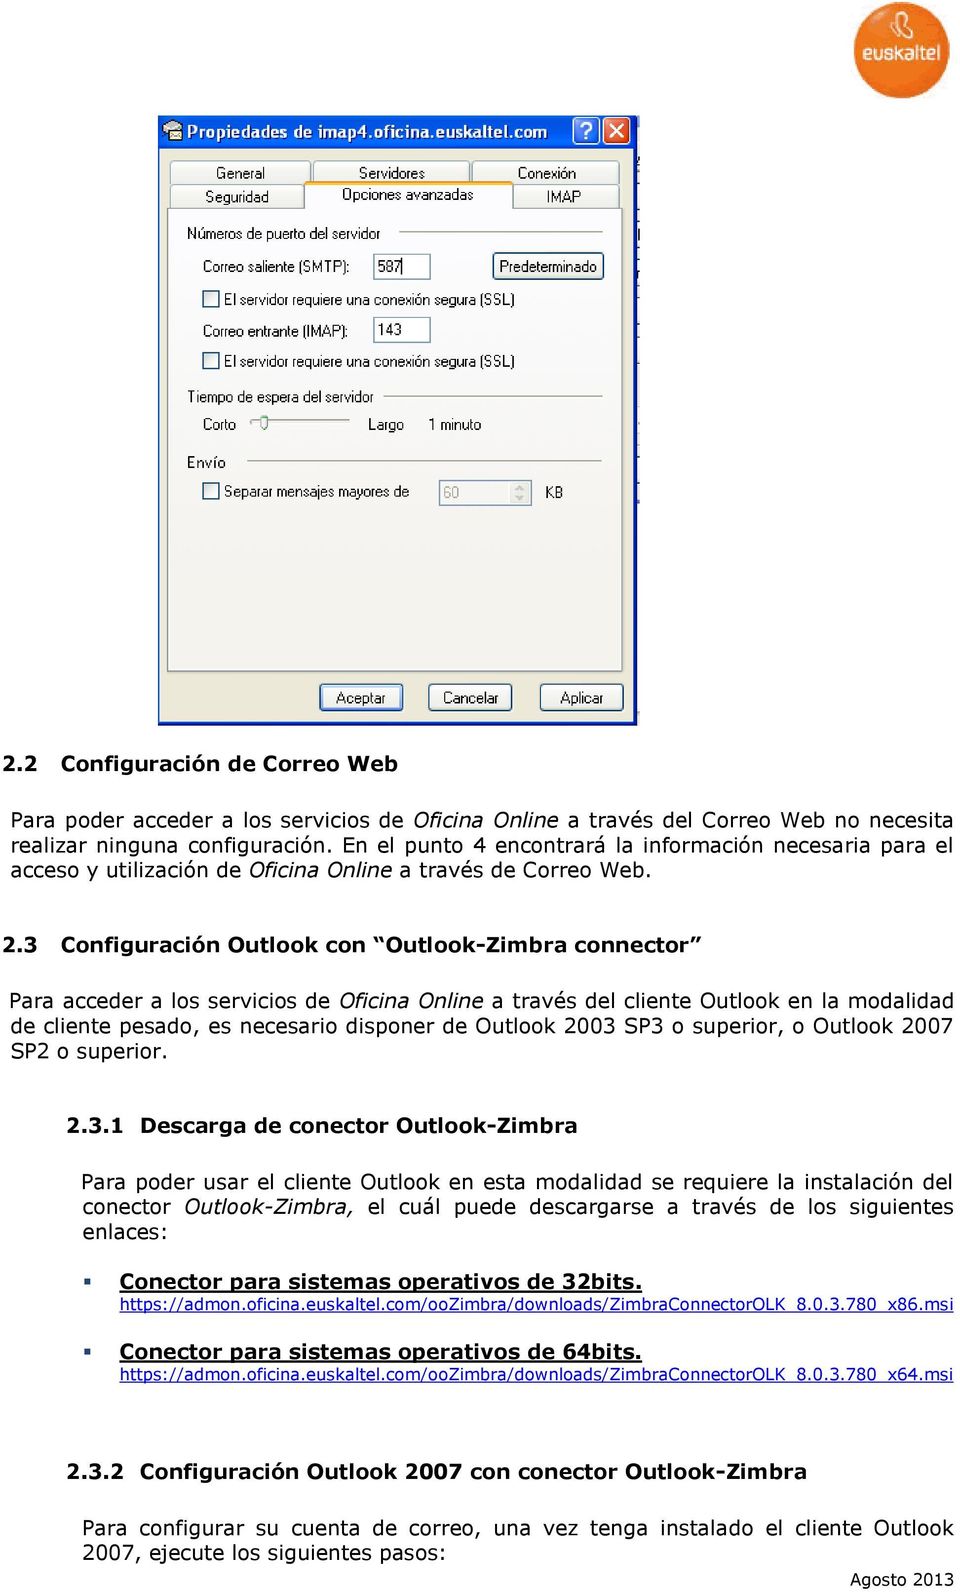 3 Configuración Outlook con Outlook-Zimbra connector Para acceder a los servicios de Oficina Online a través del cliente Outlook en la modalidad de cliente pesado, es necesario disponer de Outlook